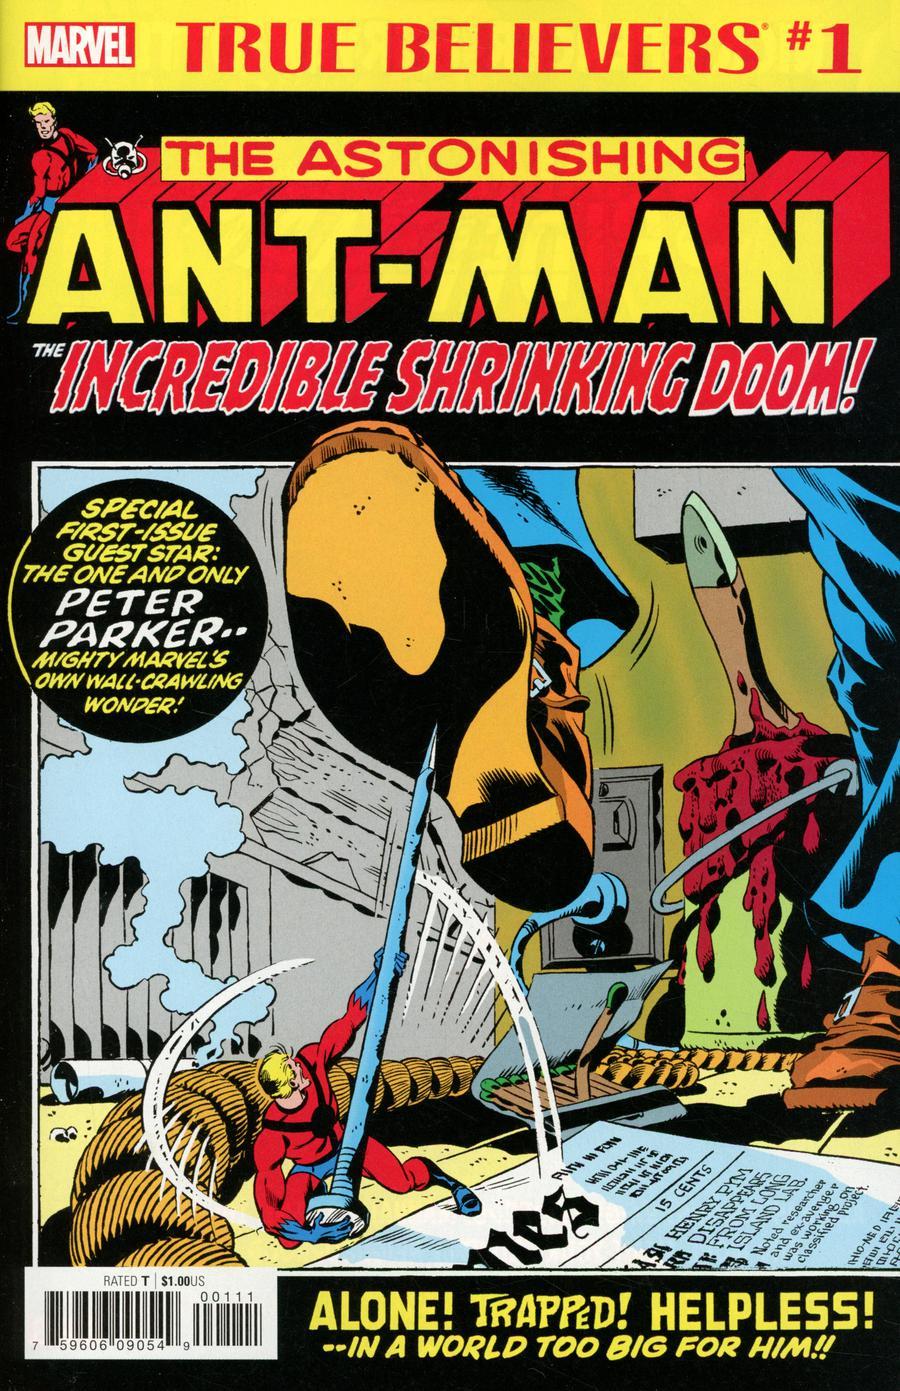 True Believers Ant-Man Incredible Shrinking Doom Vol. 1 #1